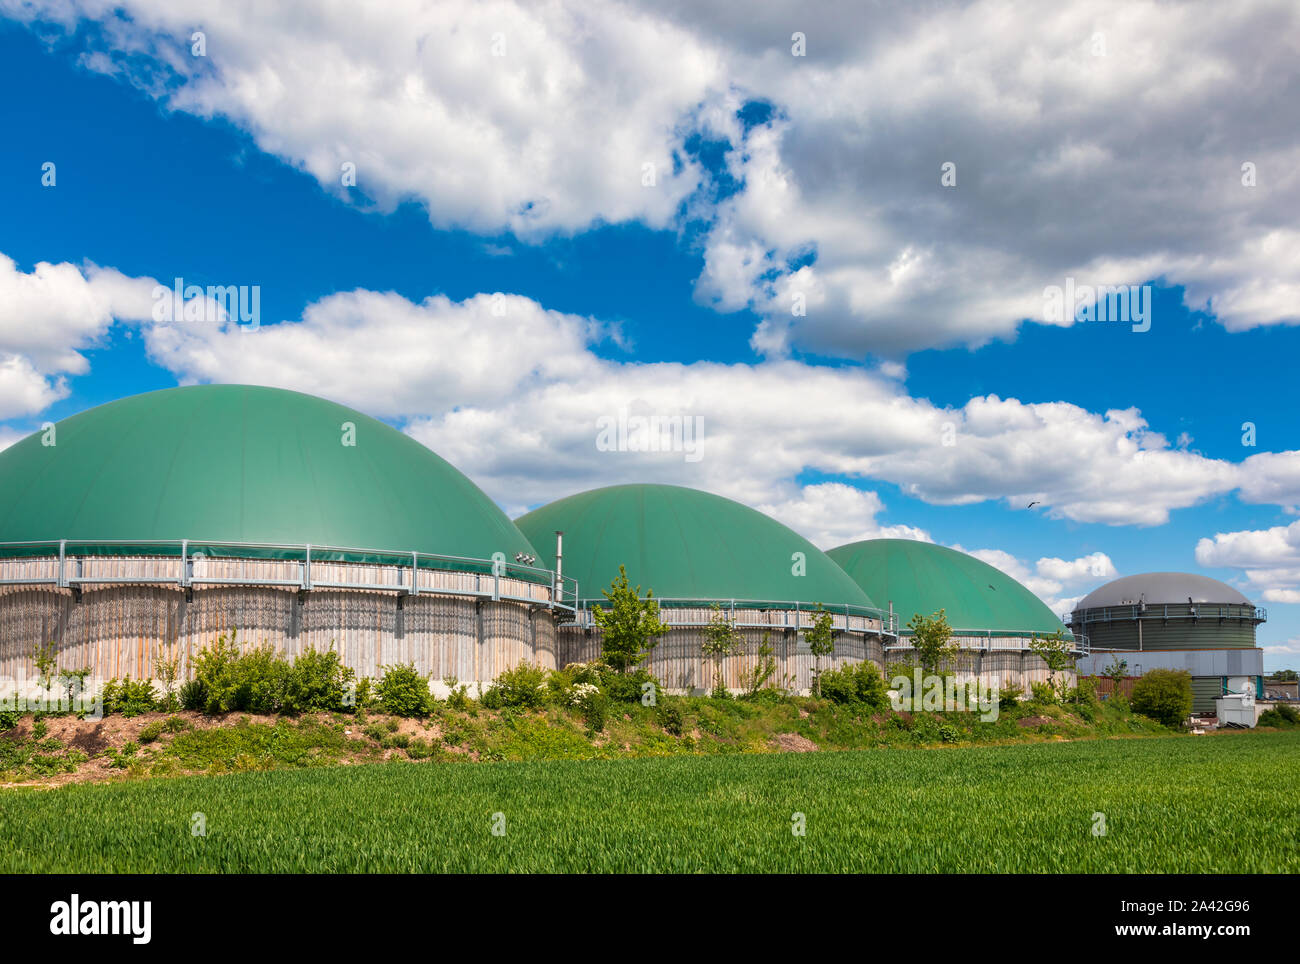 Digesteurs de biogaz ou de produire du biogaz à partir des déchets agricoles dans les régions rurales de l'Allemagne. Concept moderne de l'industrie des biocarburants Banque D'Images